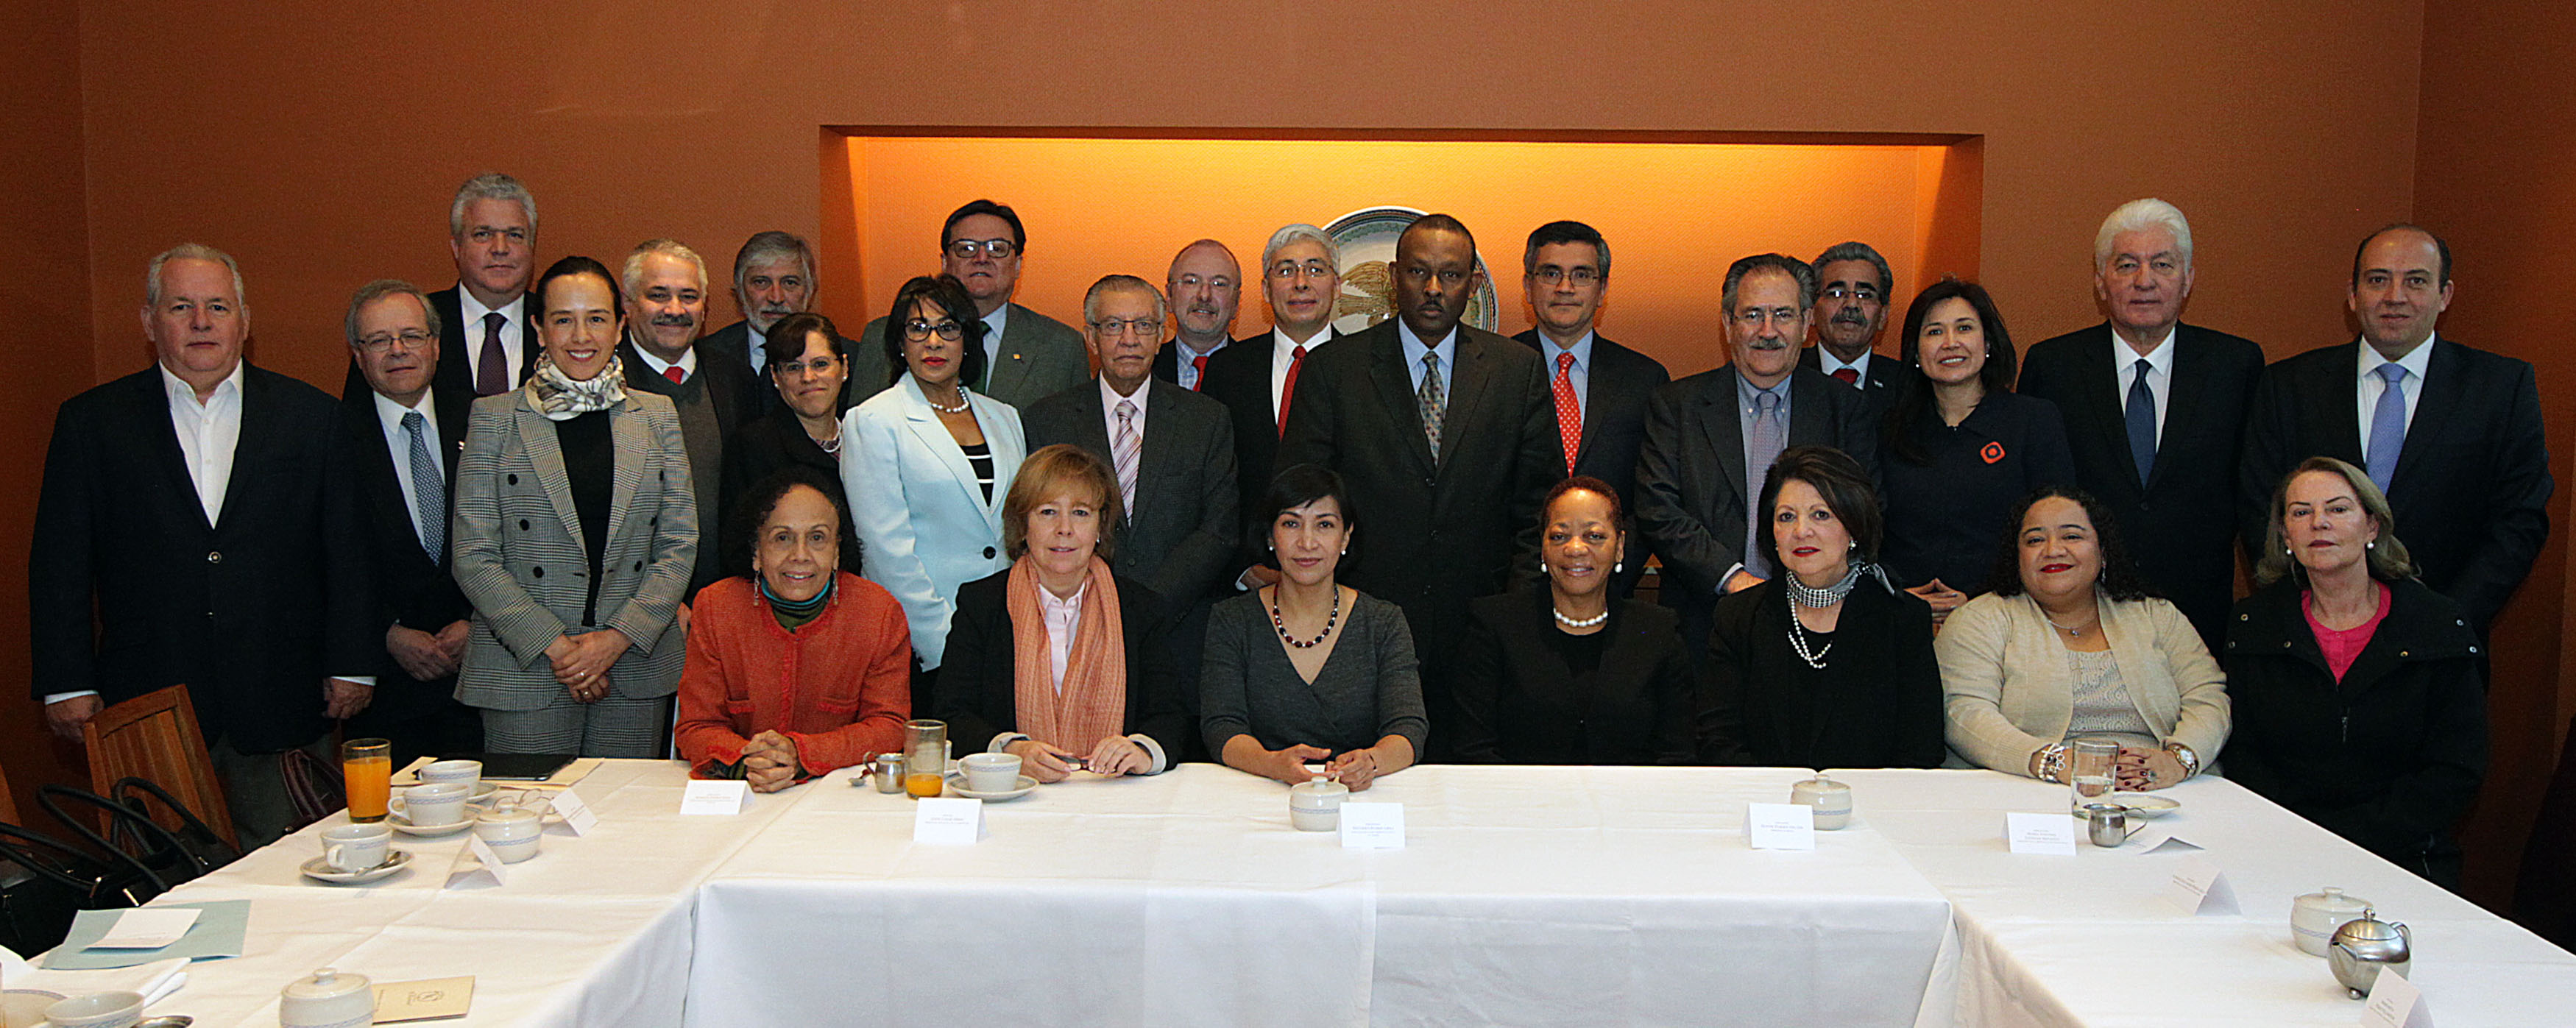 FOTO Reuni n de trabajo de la Subsecretaria Socorro Flores Liera con embajadores de Am rica Latinajpg